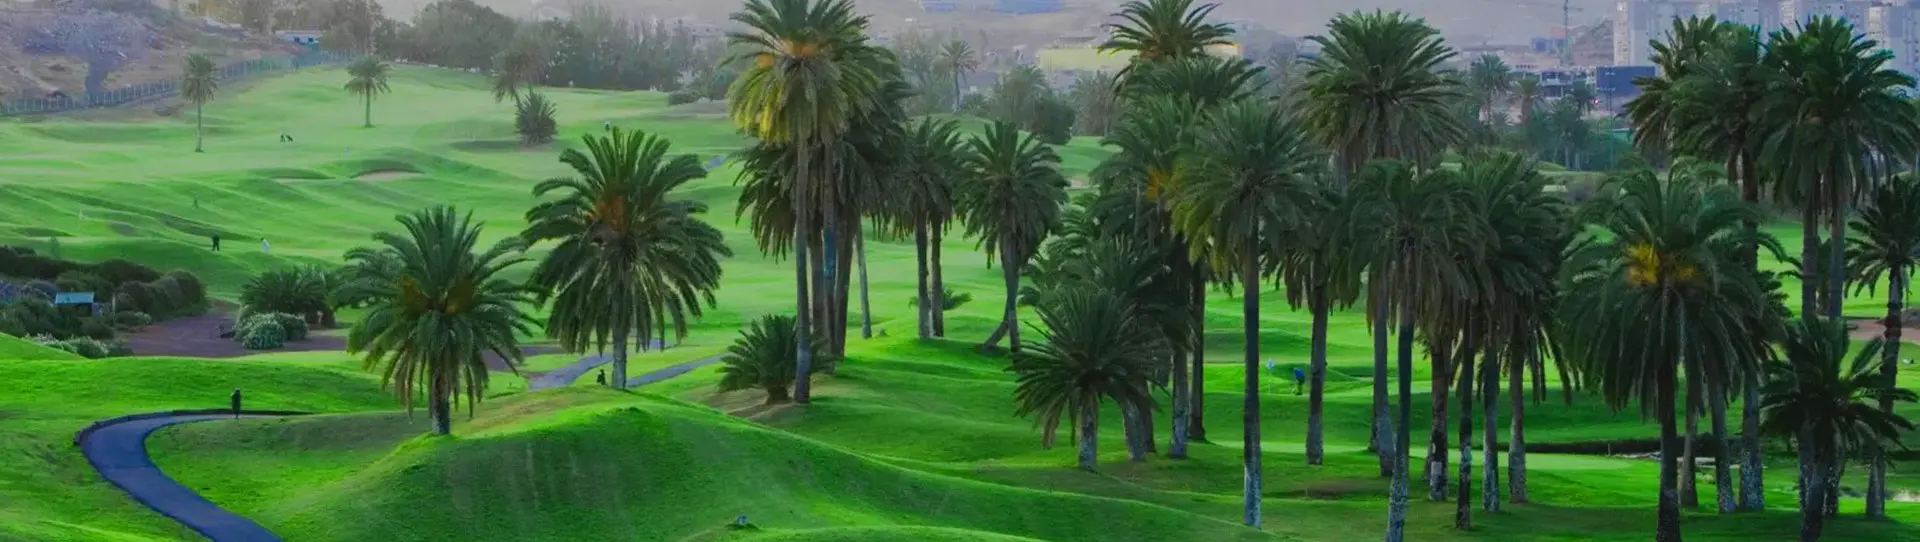 Spain golf courses - El Cortijo Club de Campo - Photo 2